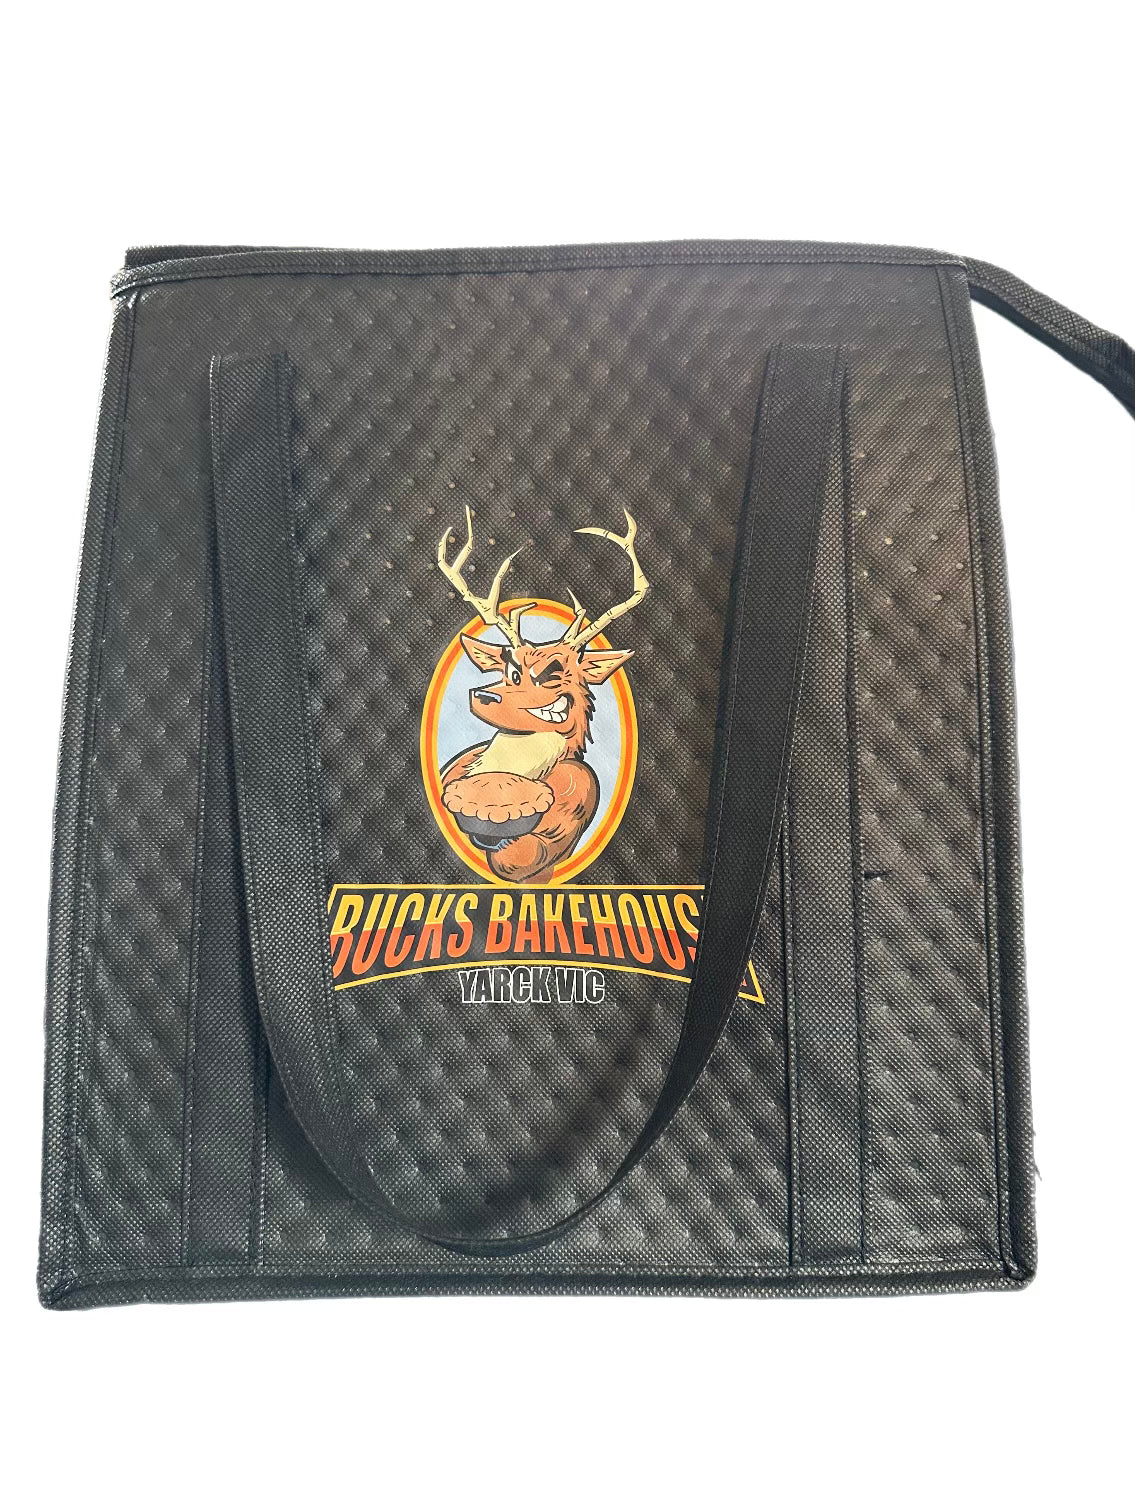 Bucks Bakehouse Cooler Bag